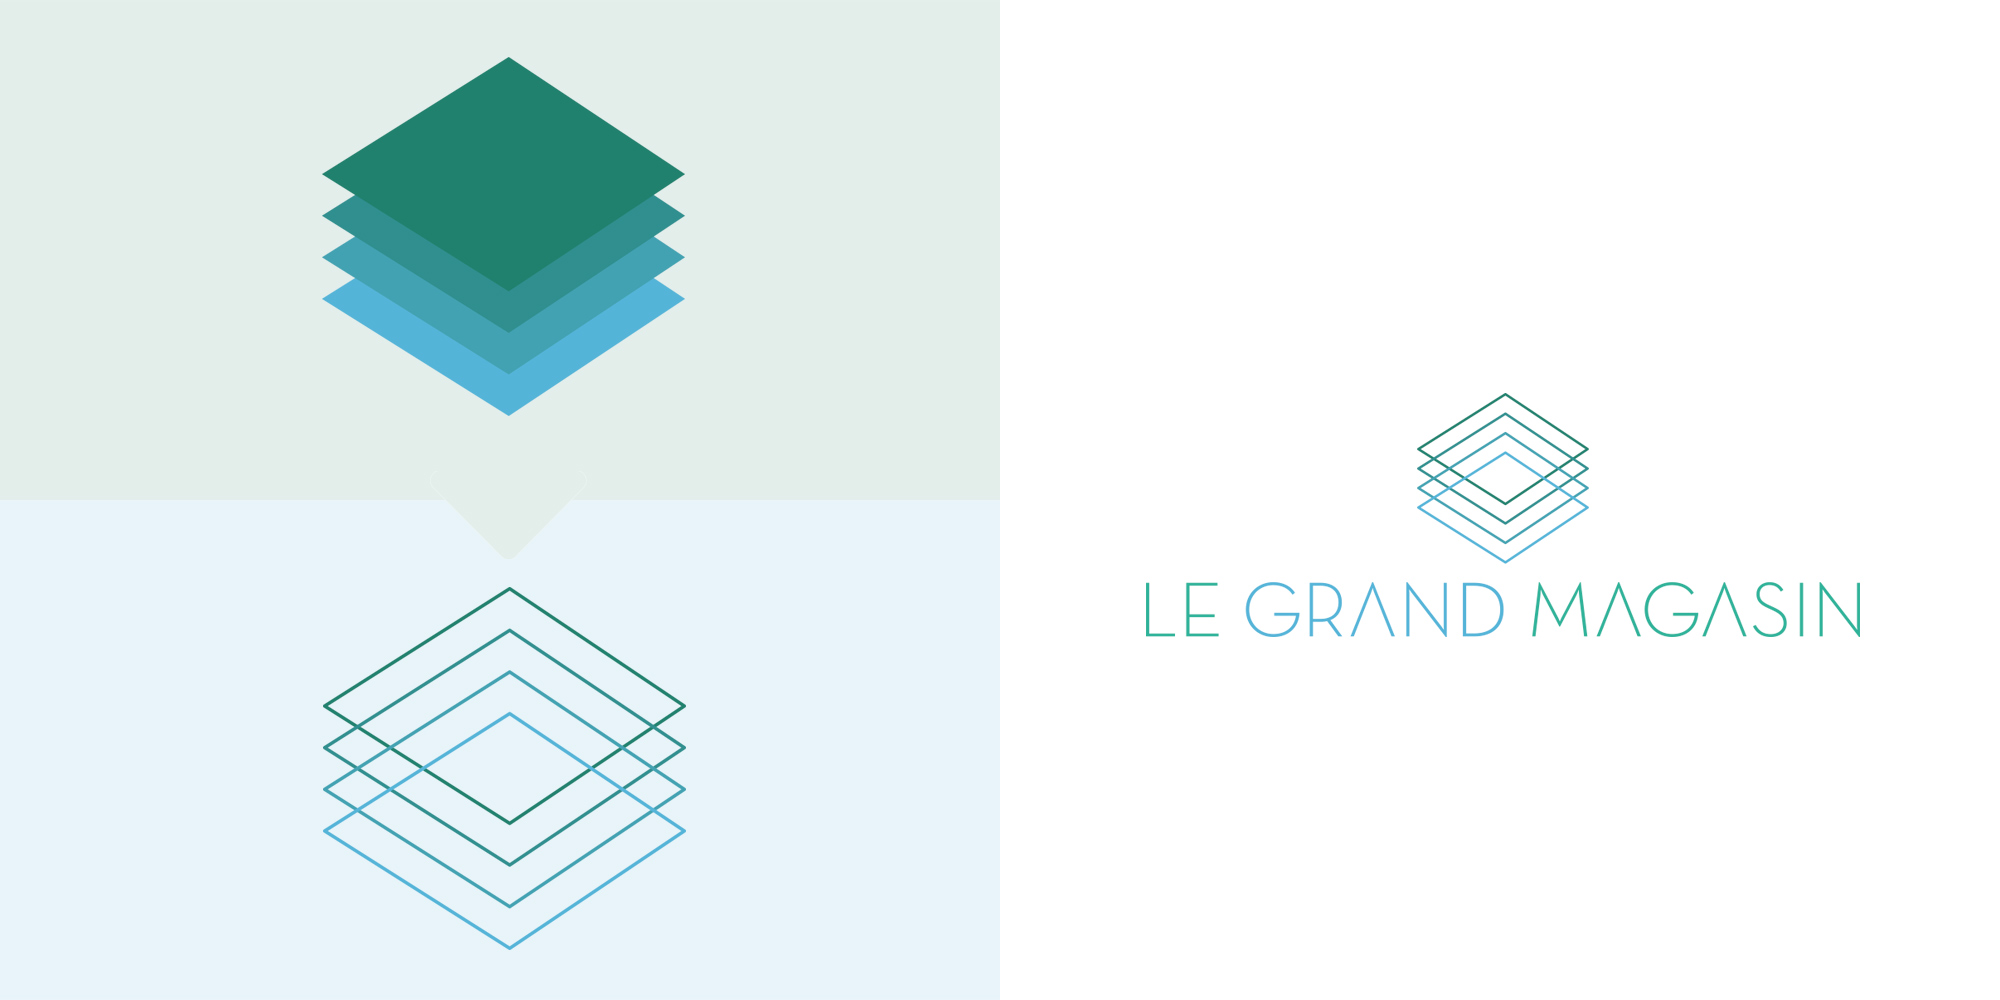 Logos - identité visuelle - IDDP - Hammerson - Le Grand Magasin